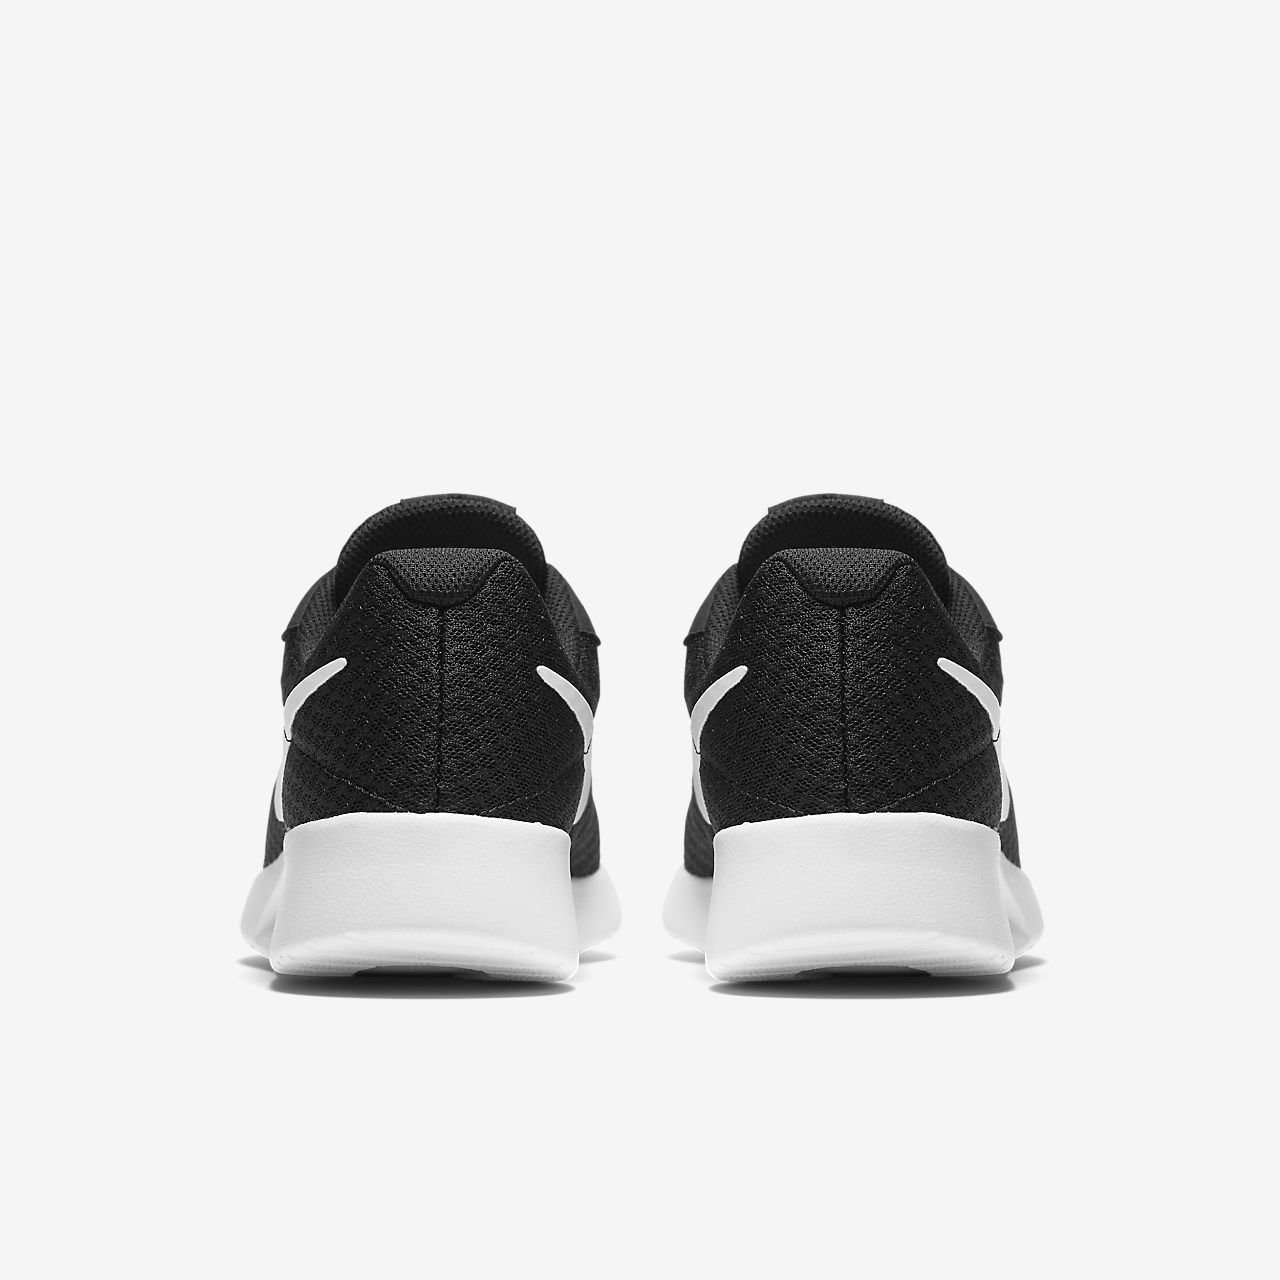 Nike Tanjun - Sneakers - Sort/Hvide | DK-69510